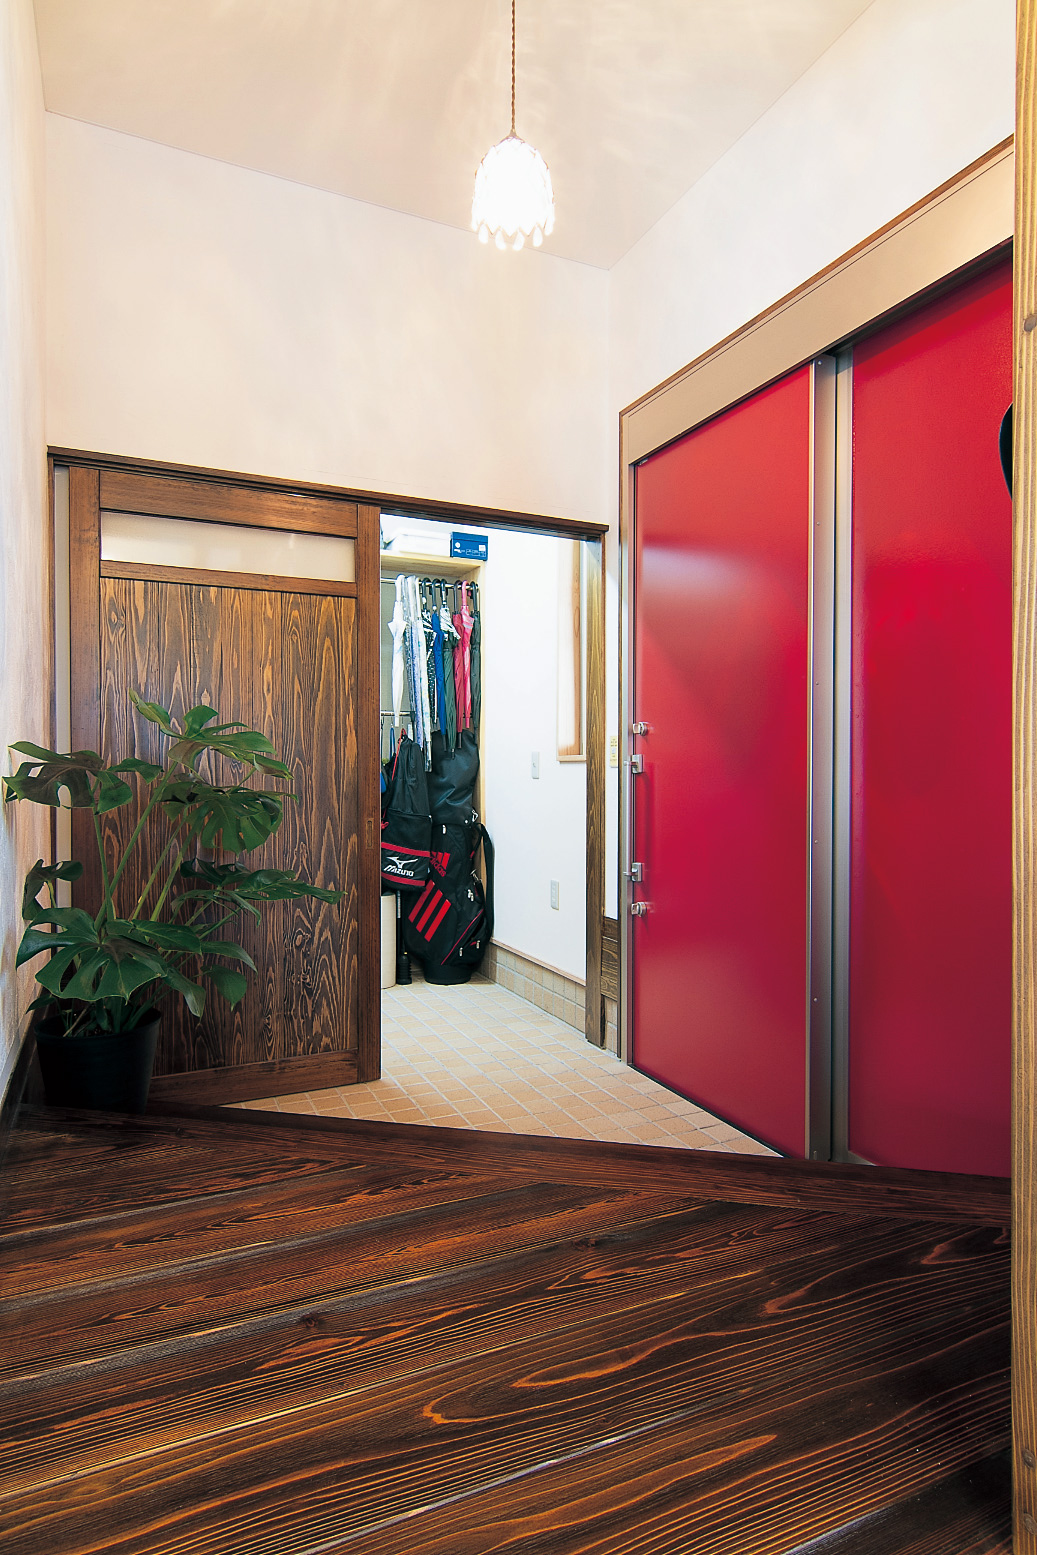 真っ赤なスライドドアが印象的な玄関。ウォークインシューズクロークを通って、直接キッチンへも行ける。ドアの向こうはガレージで濡れずにで切りできて便利